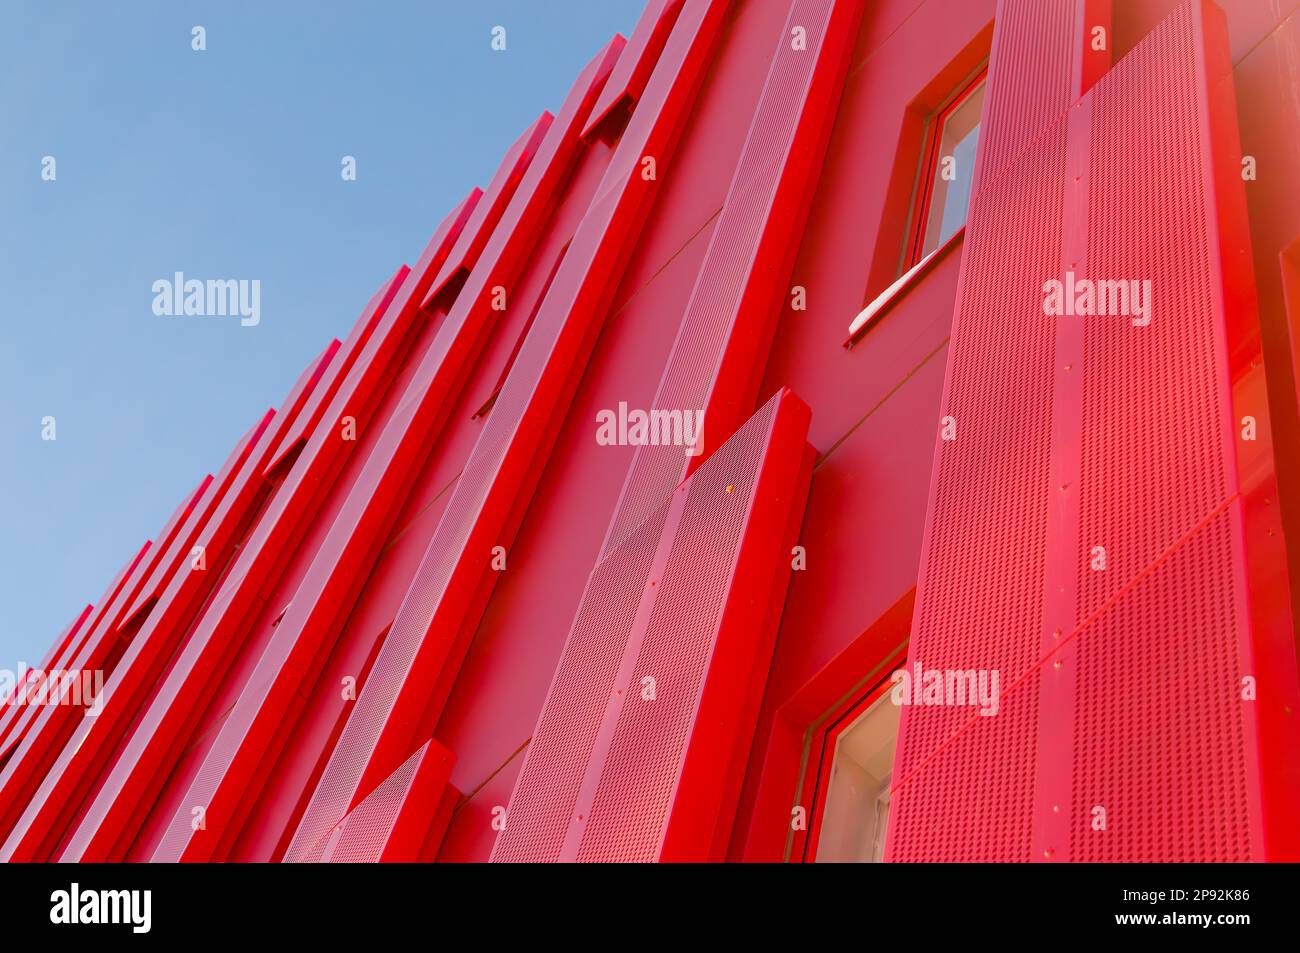 Bâtiment moderne de bureau architectural rouge. Tôles recouvrant l'extérieur de la structure. Bâtiment unique de style futuriste. Ciel dégagé à l'arrière Banque D'Images